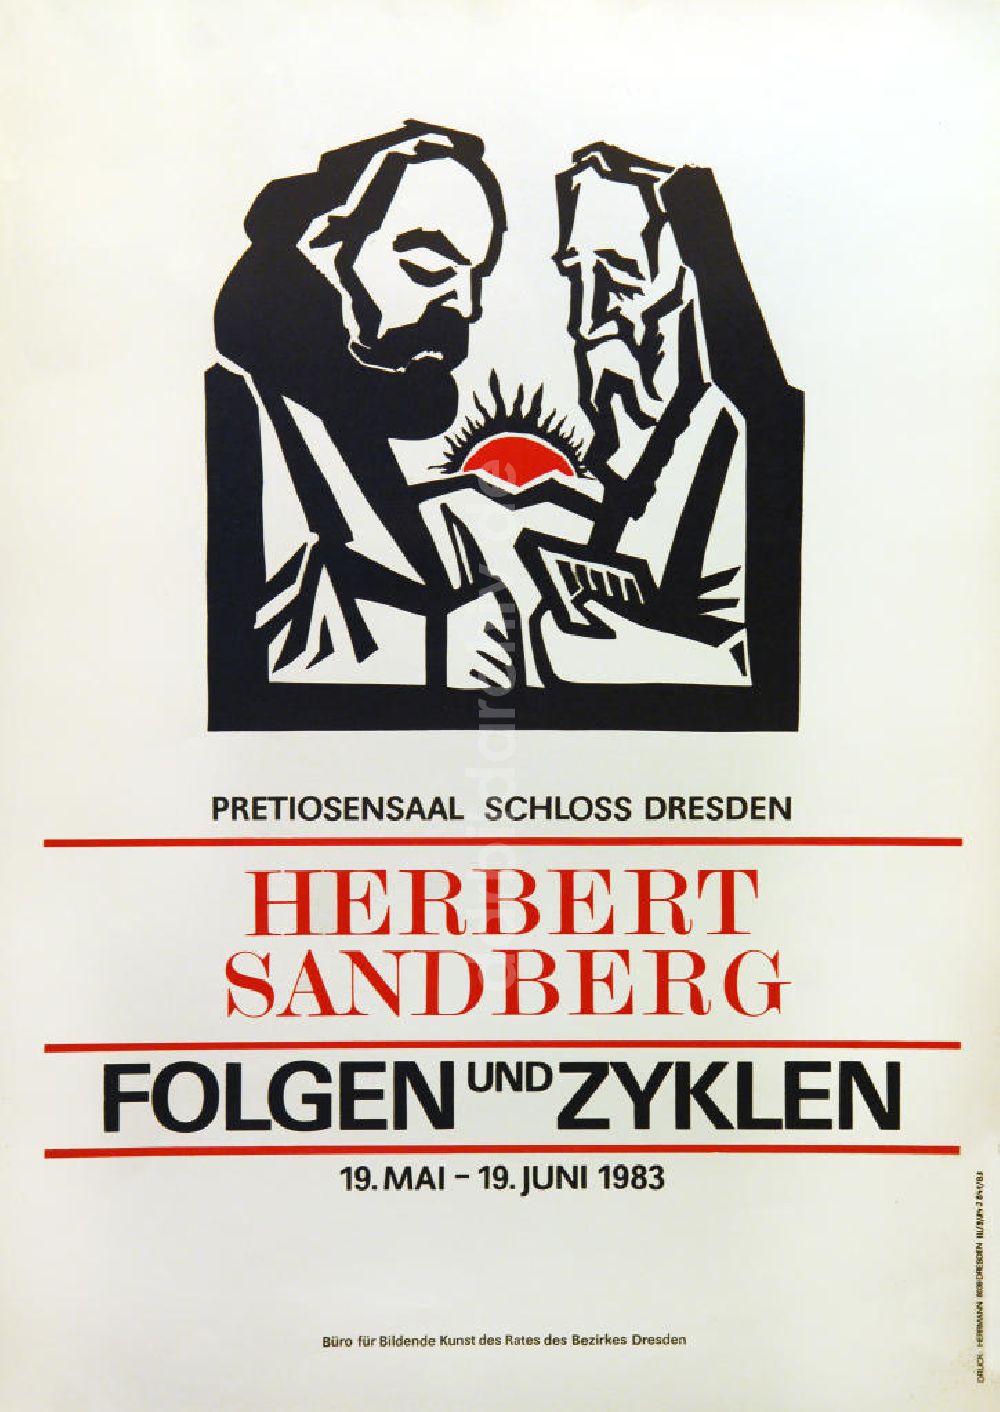 Berlin: Plakat von der Ausstellung Herbert Sandberg, Folgen und Zyklen aus dem Jahr 1983